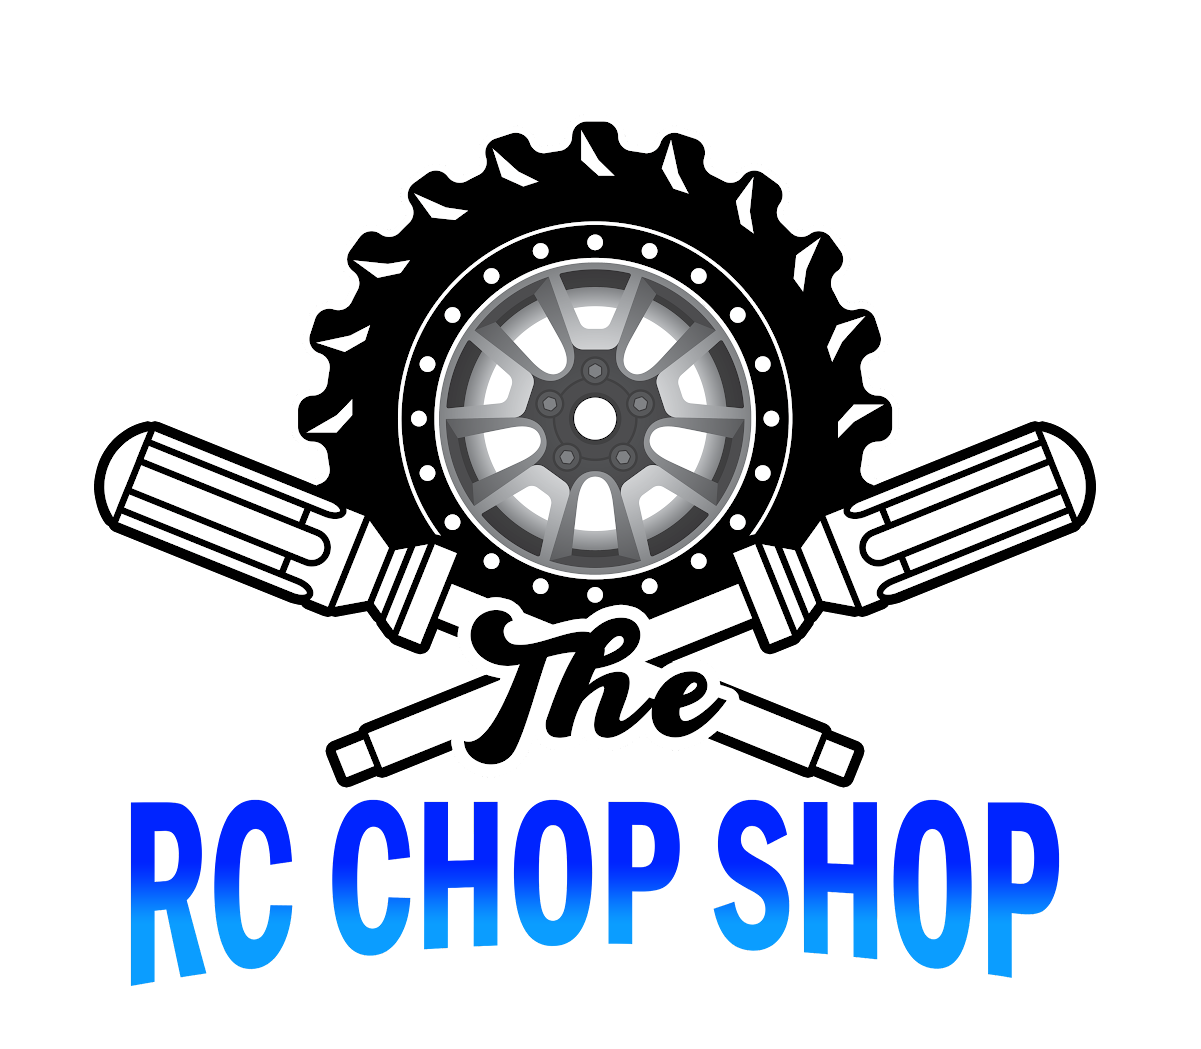 The RC Chop Shop